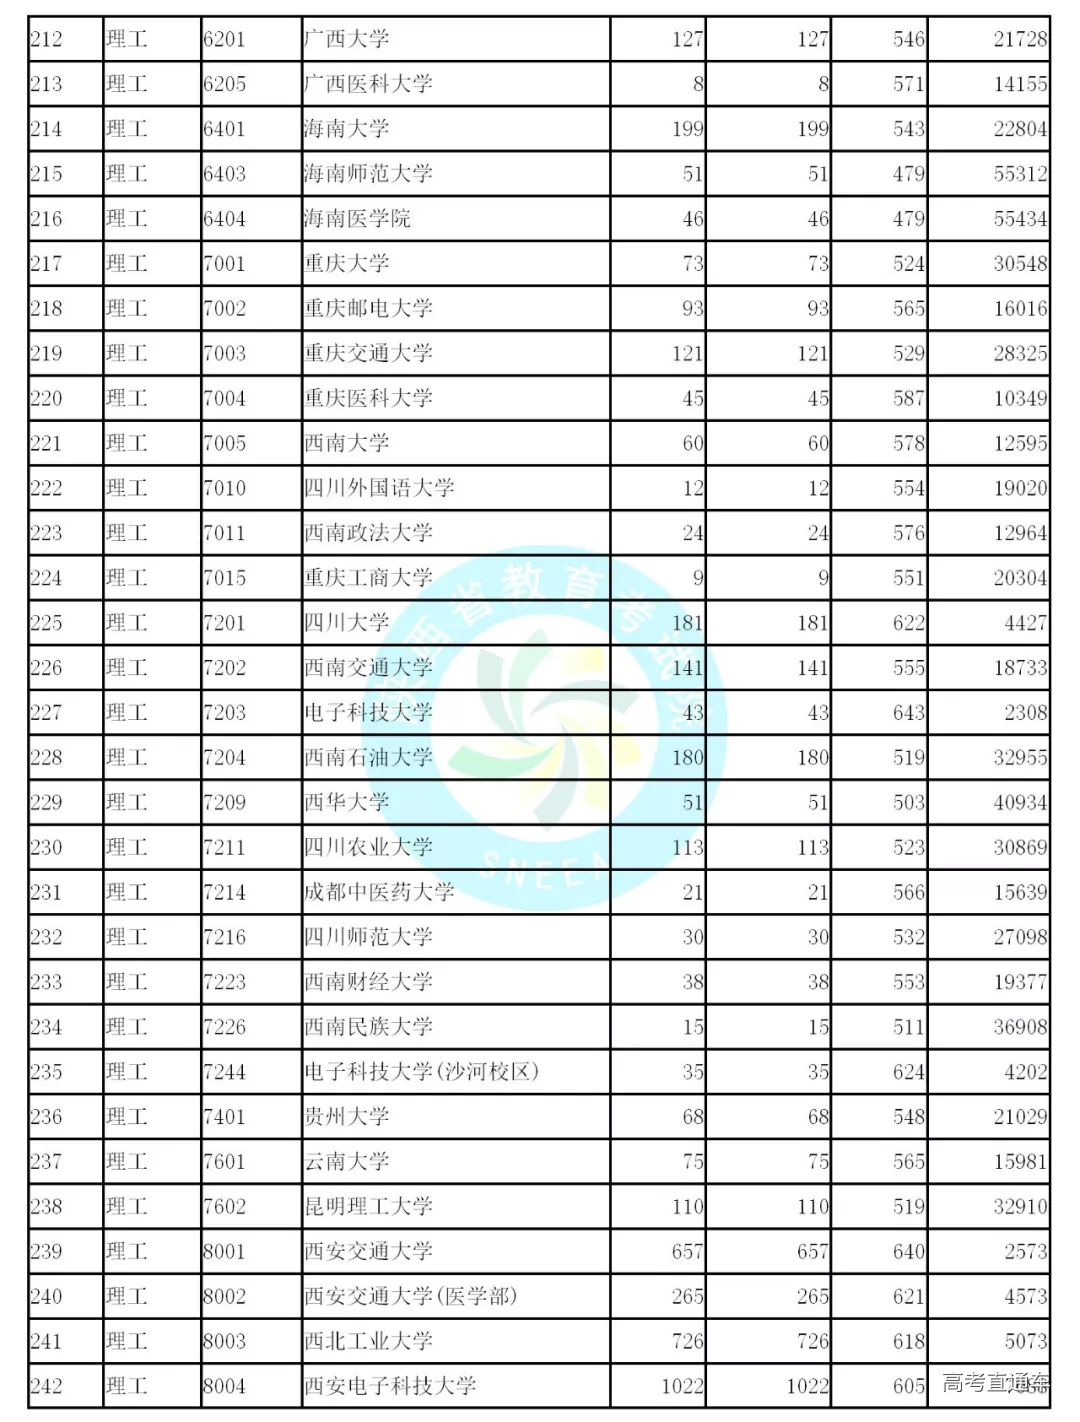 2019年陕西省高考本科一批文史类、理工类正式投档线统计表公布